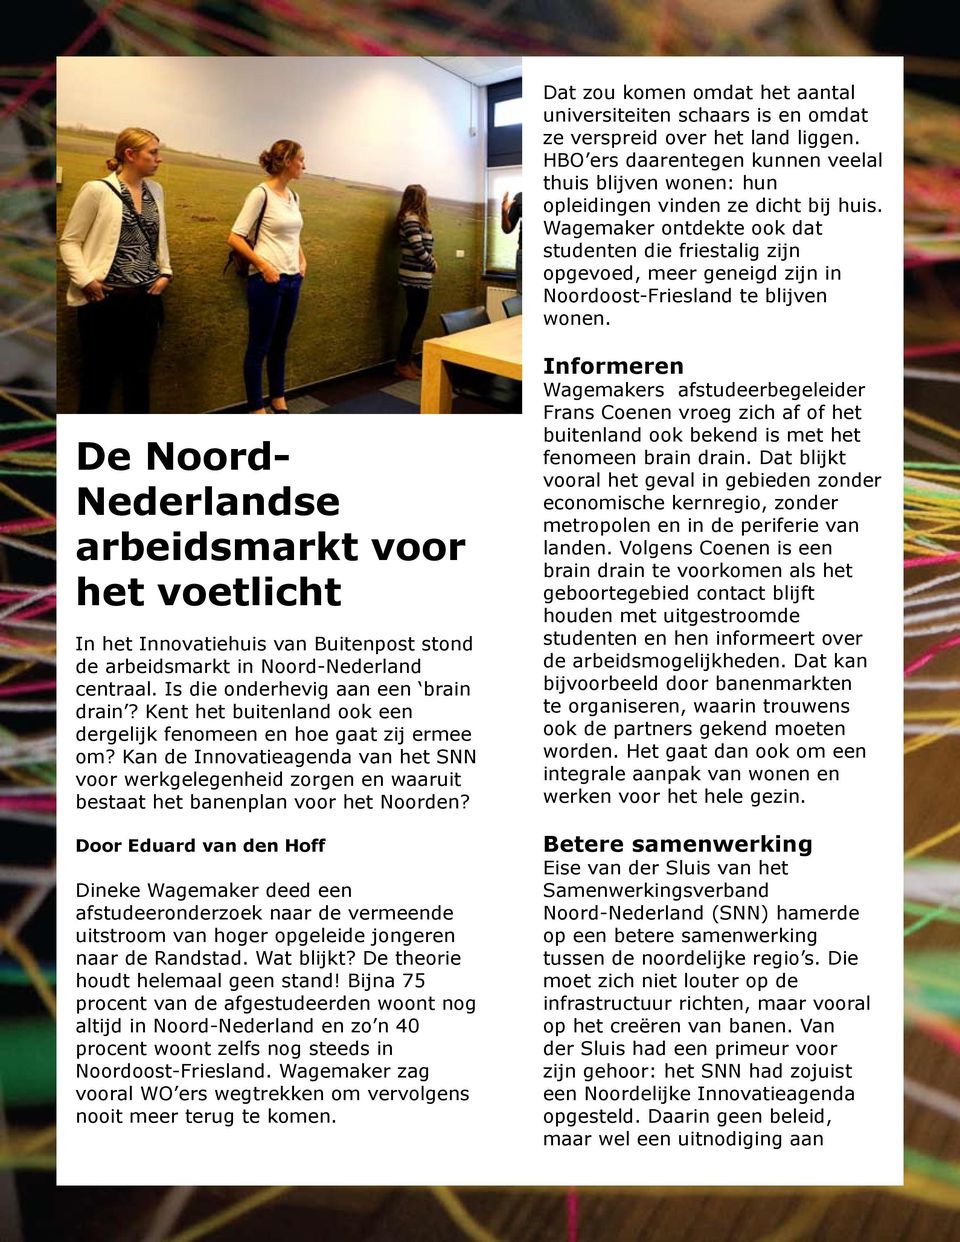 De Noord- Nederlandse arbeidsmarkt voor het voetlicht In het Innovatiehuis van Buitenpost stond de arbeidsmarkt in Noord-Nederland centraal. Is die onderhevig aan een brain drain?